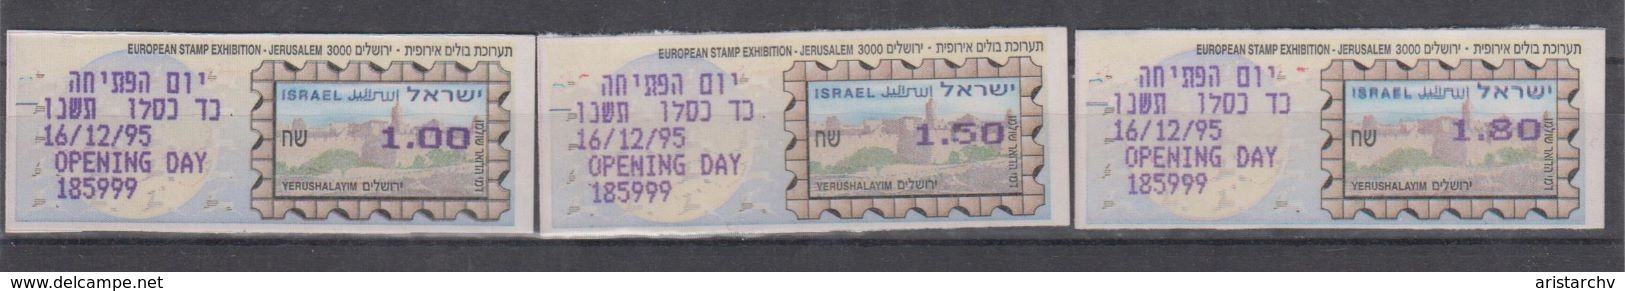 ISRAEL 1995 MASSAD ATM EUROPEAN STAMP EXHIBITION JERUSALEM 3000 OPENING DAY 1 1.5 1.8 SHEKELS - Vignettes D'affranchissement (Frama)